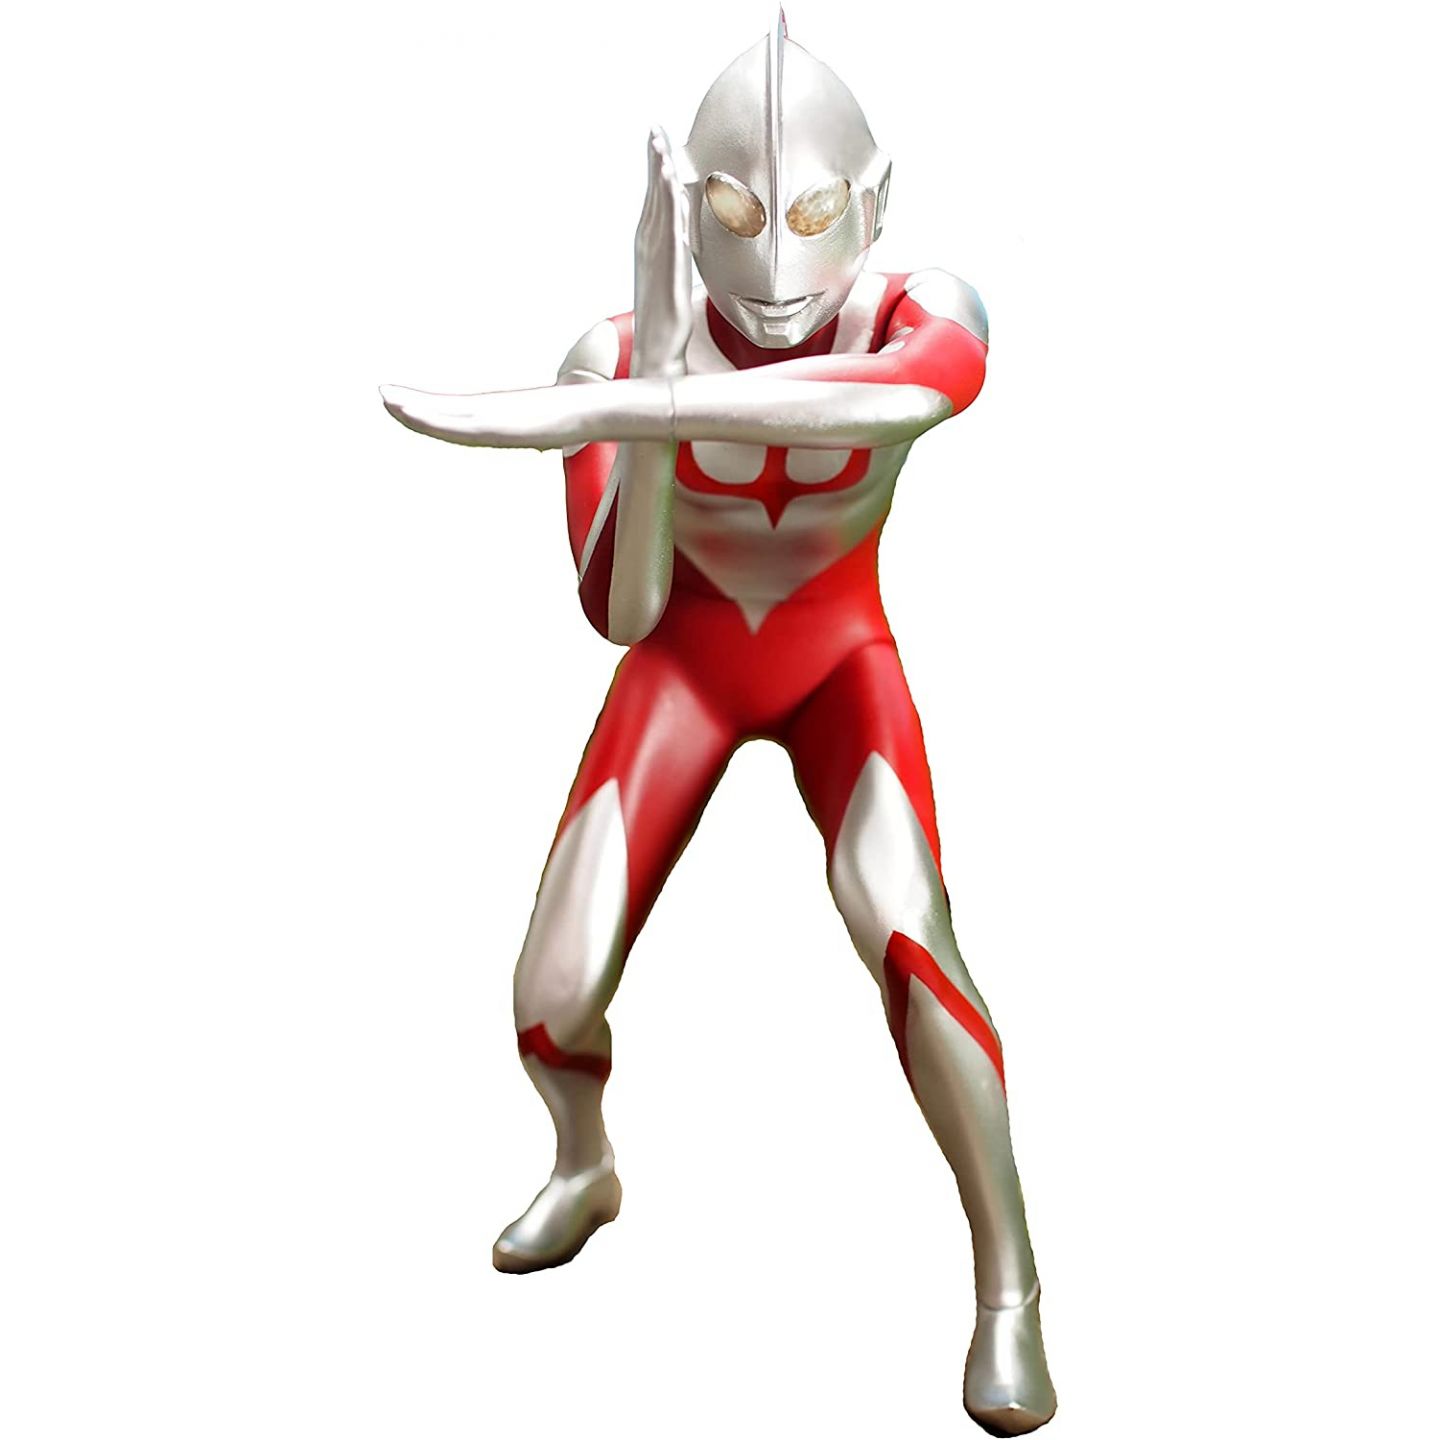 Ultraman Suit 7.5 - OP Pose by GeneralMechanics on DeviantArt